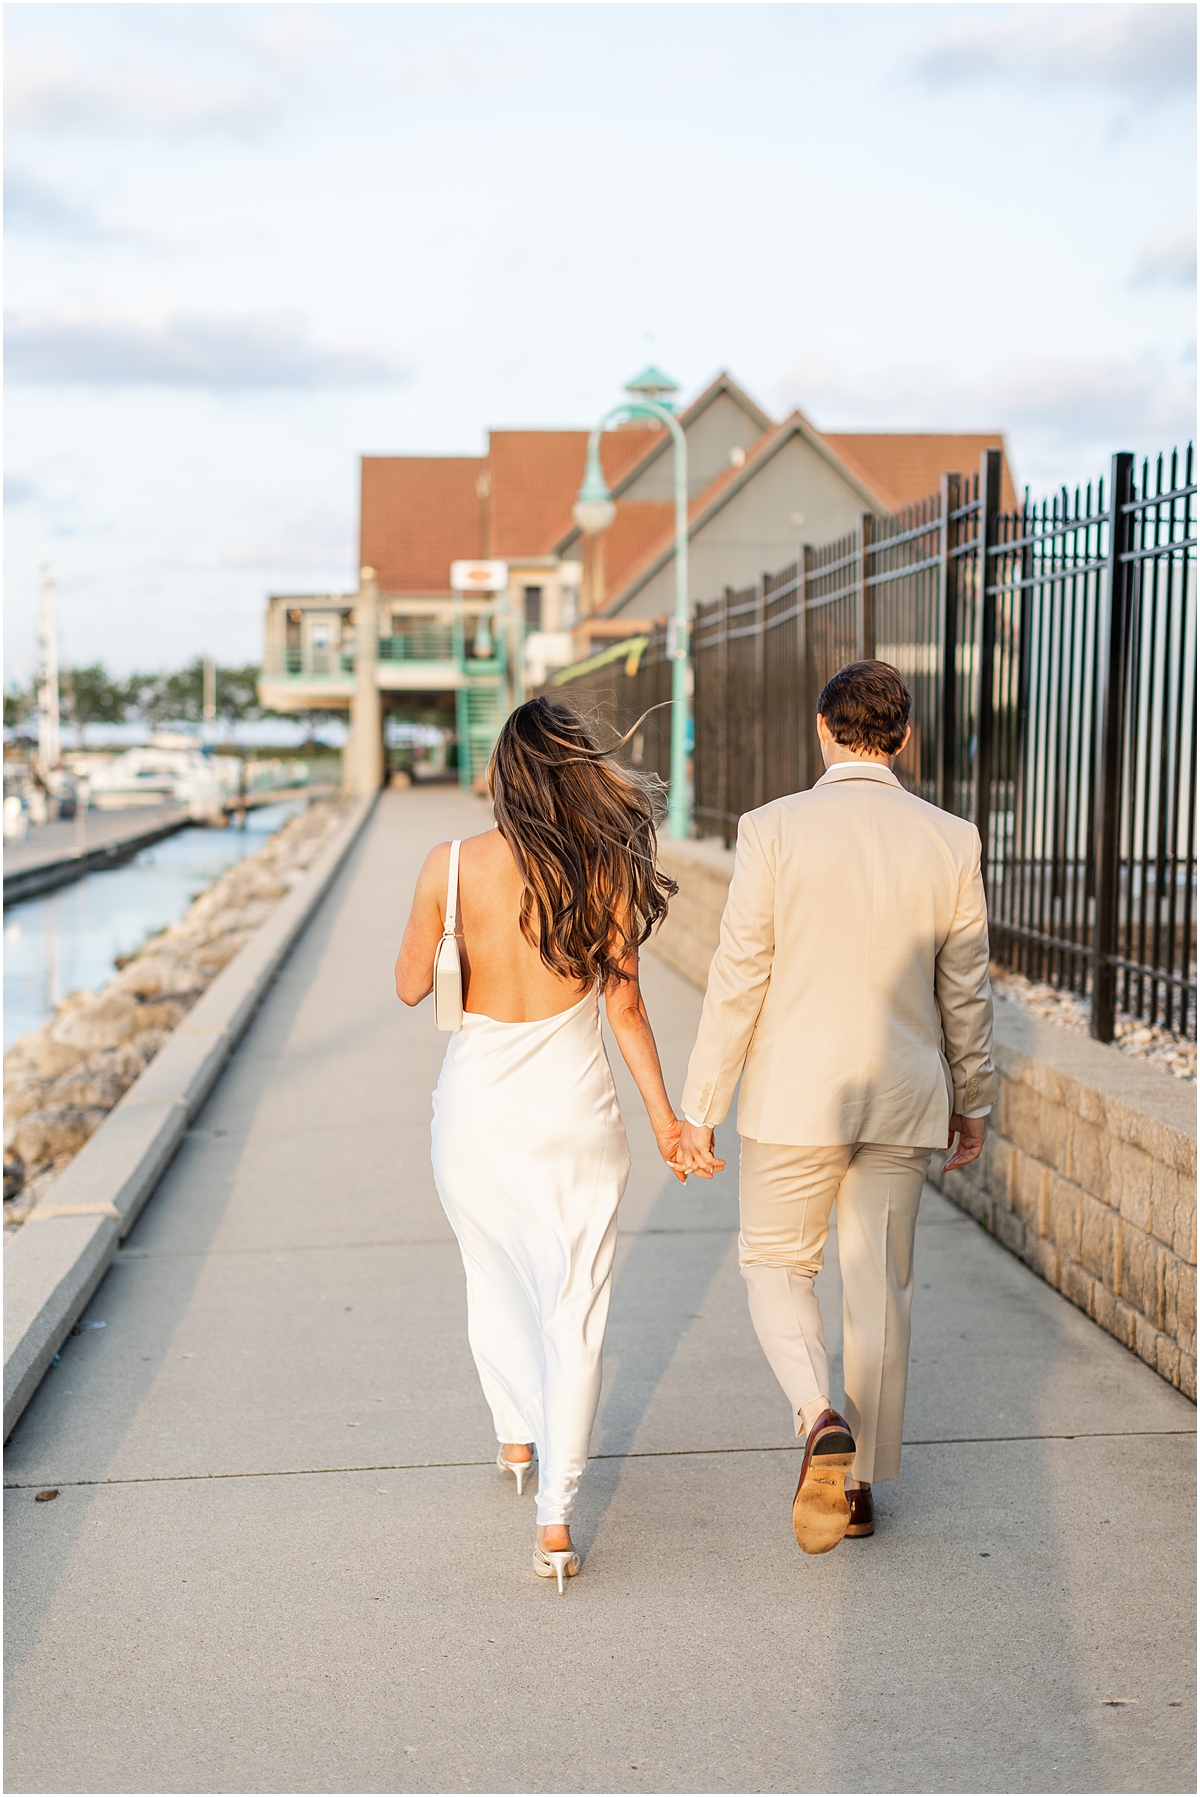 Bride and groom walk together holding hands